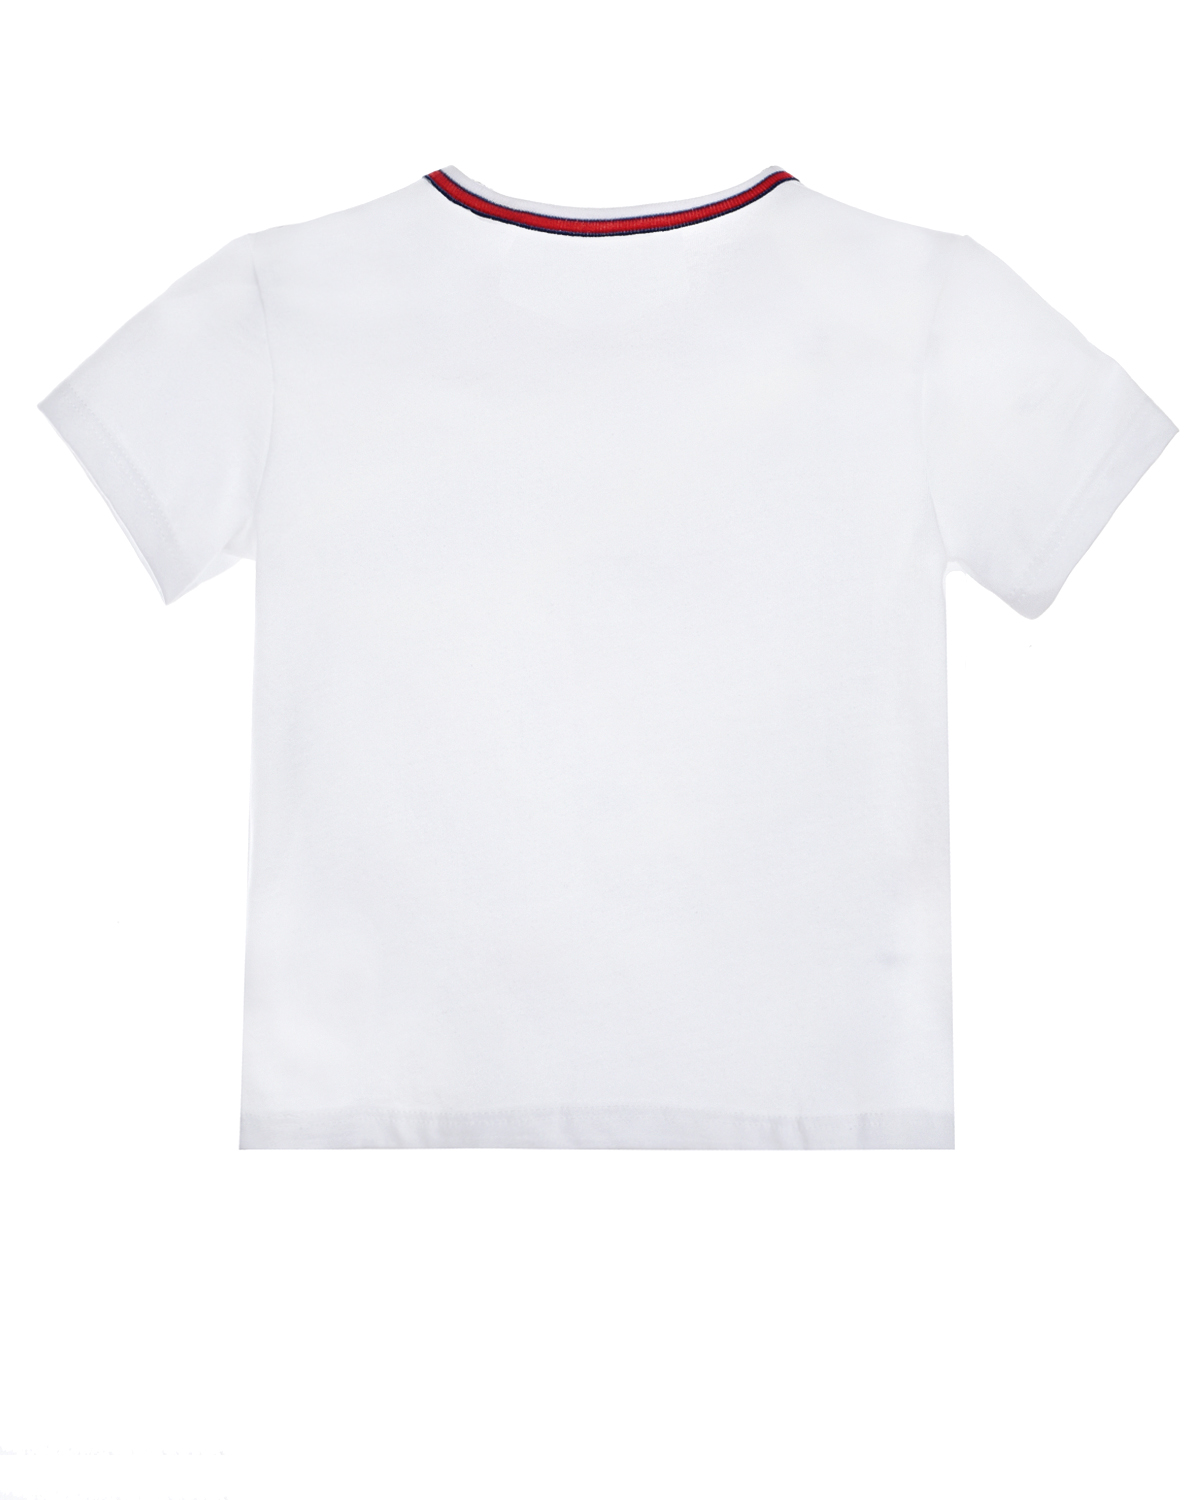 Белая футболка с принтом "парусники" Sanetta fiftyseven детская, размер 68, цвет белый - фото 2